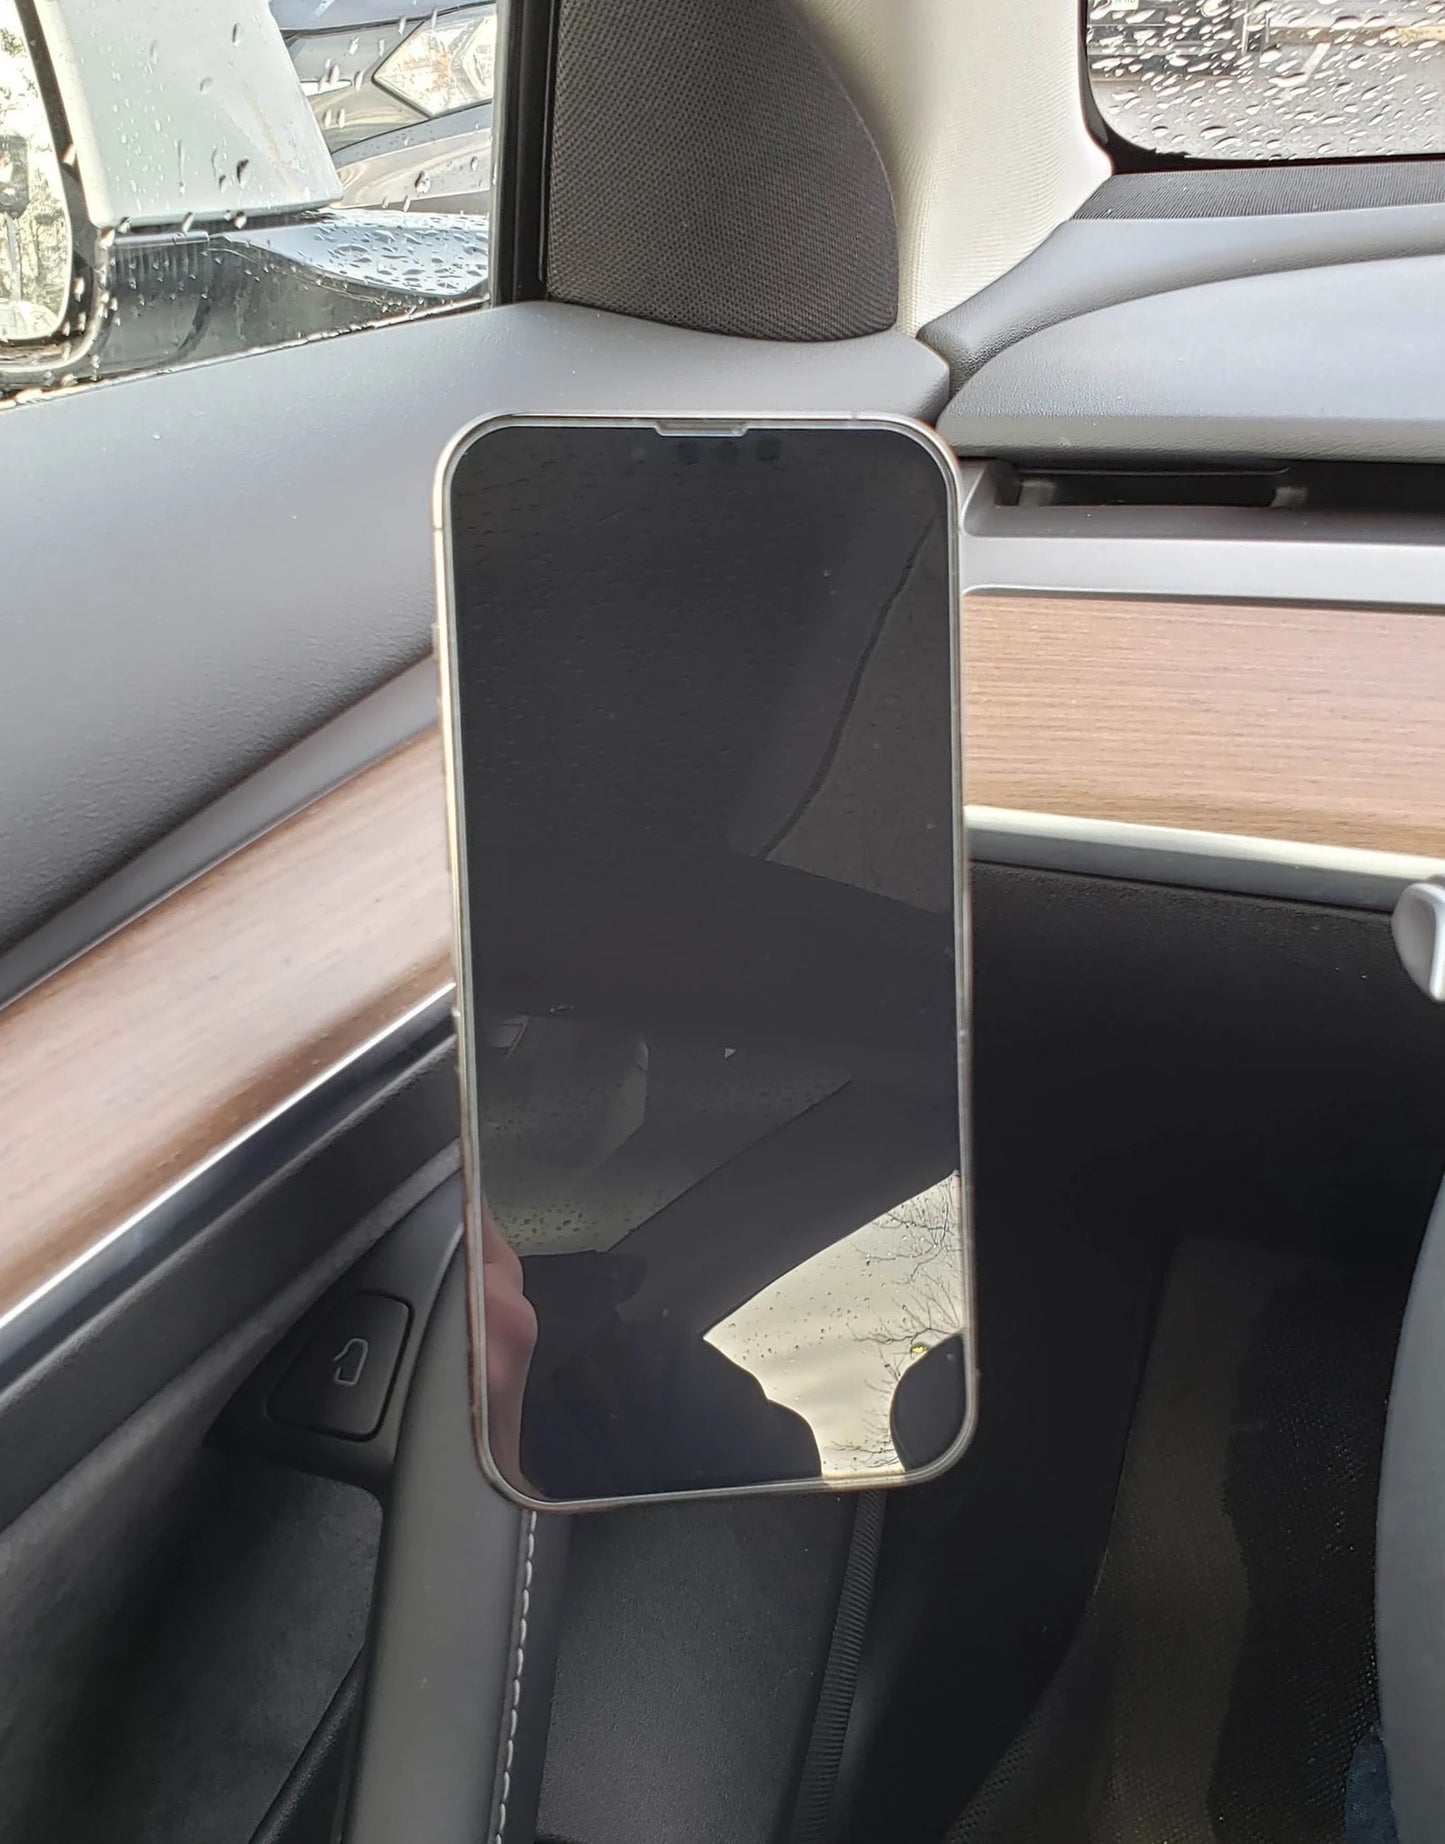 Magnetic Magsafe phone holder for Tesla Model 3 and Tesla Model Y